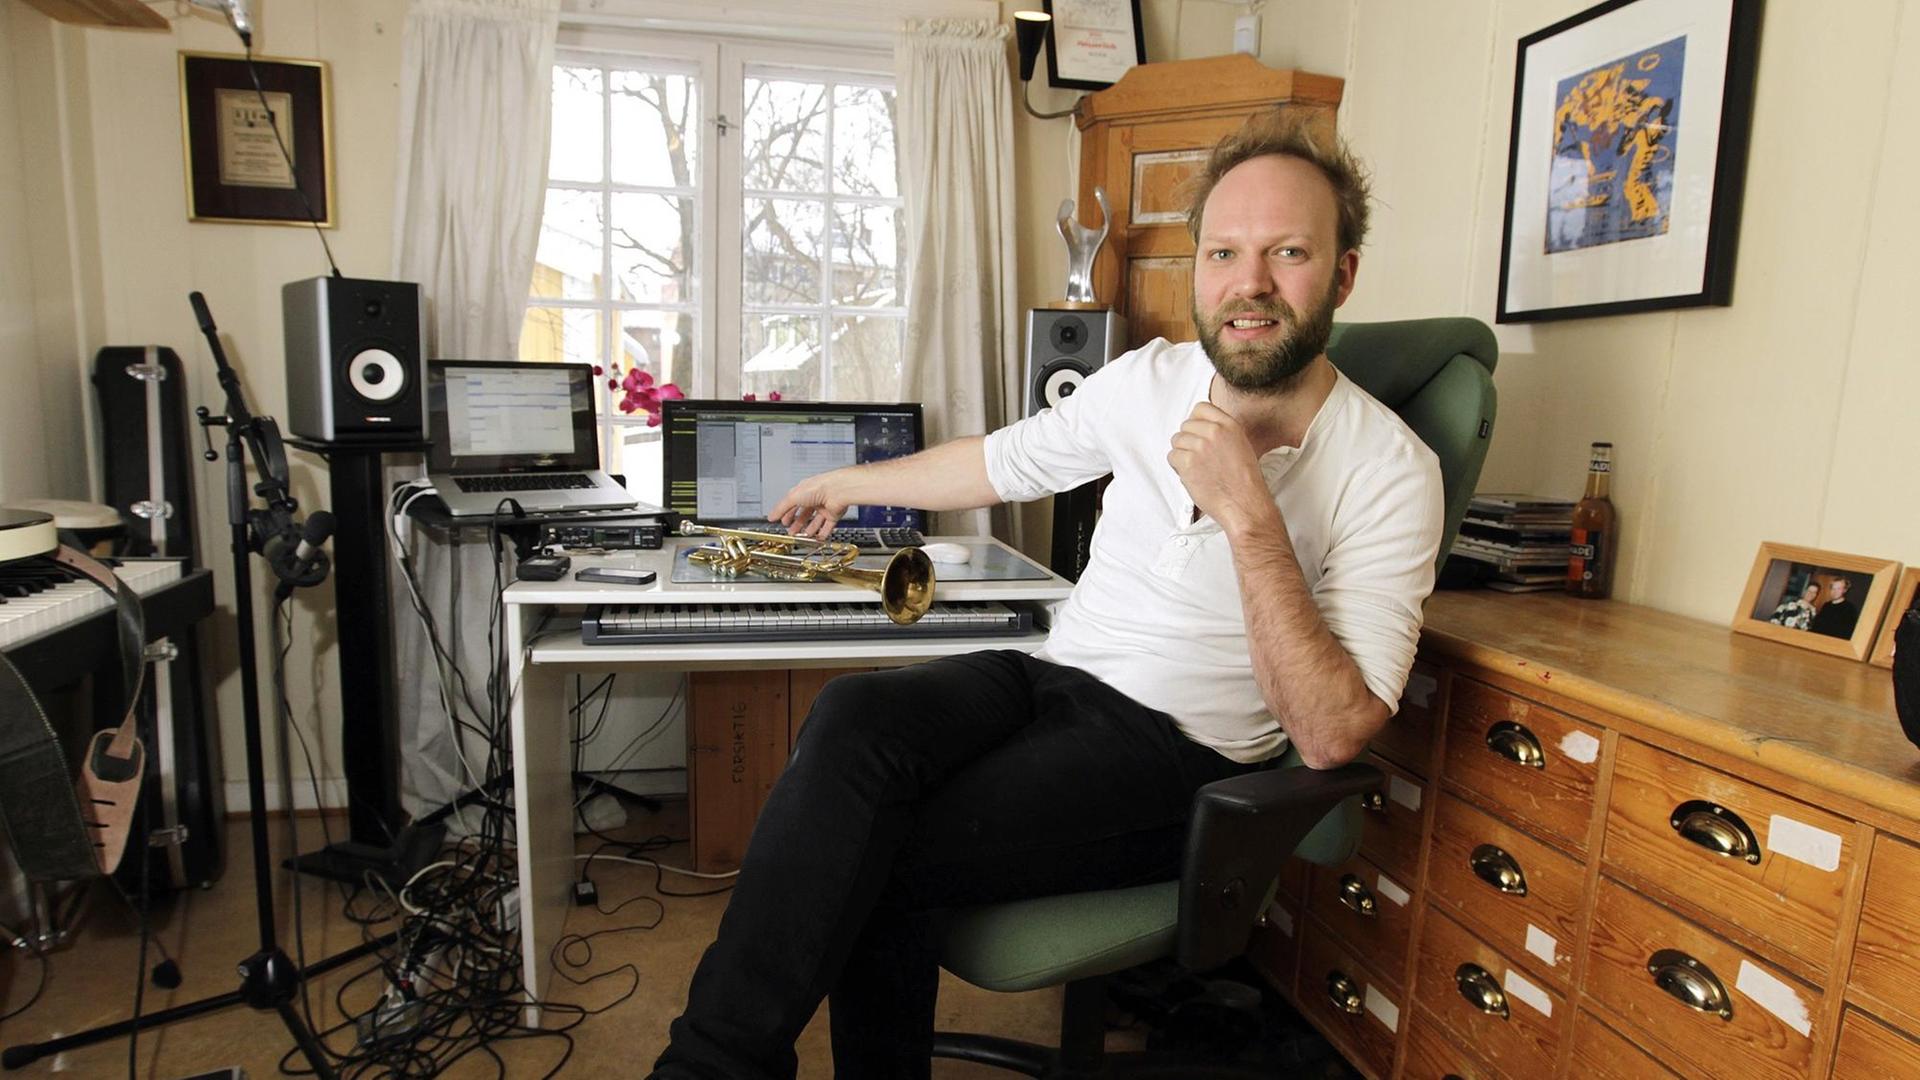 Musiker Mathias Eick (31) in seinem Studio im Osloer Stadtteil Sagene, aufgenommen am 21.02.2011.